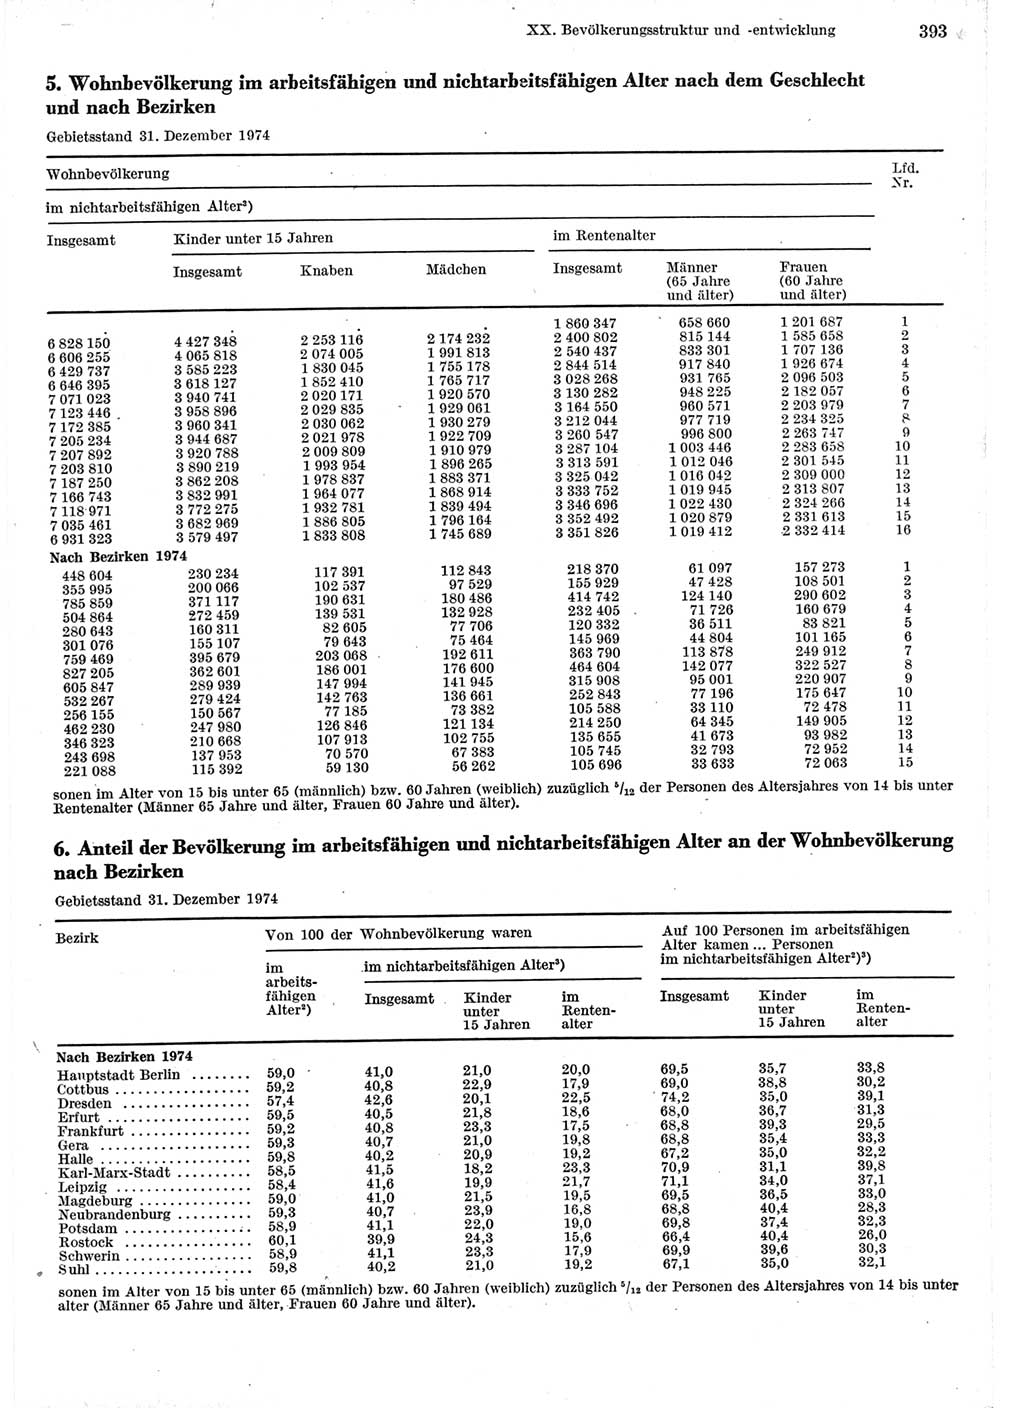 Statistisches Jahrbuch der Deutschen Demokratischen Republik (DDR) 1975, Seite 393 (Stat. Jb. DDR 1975, S. 393)